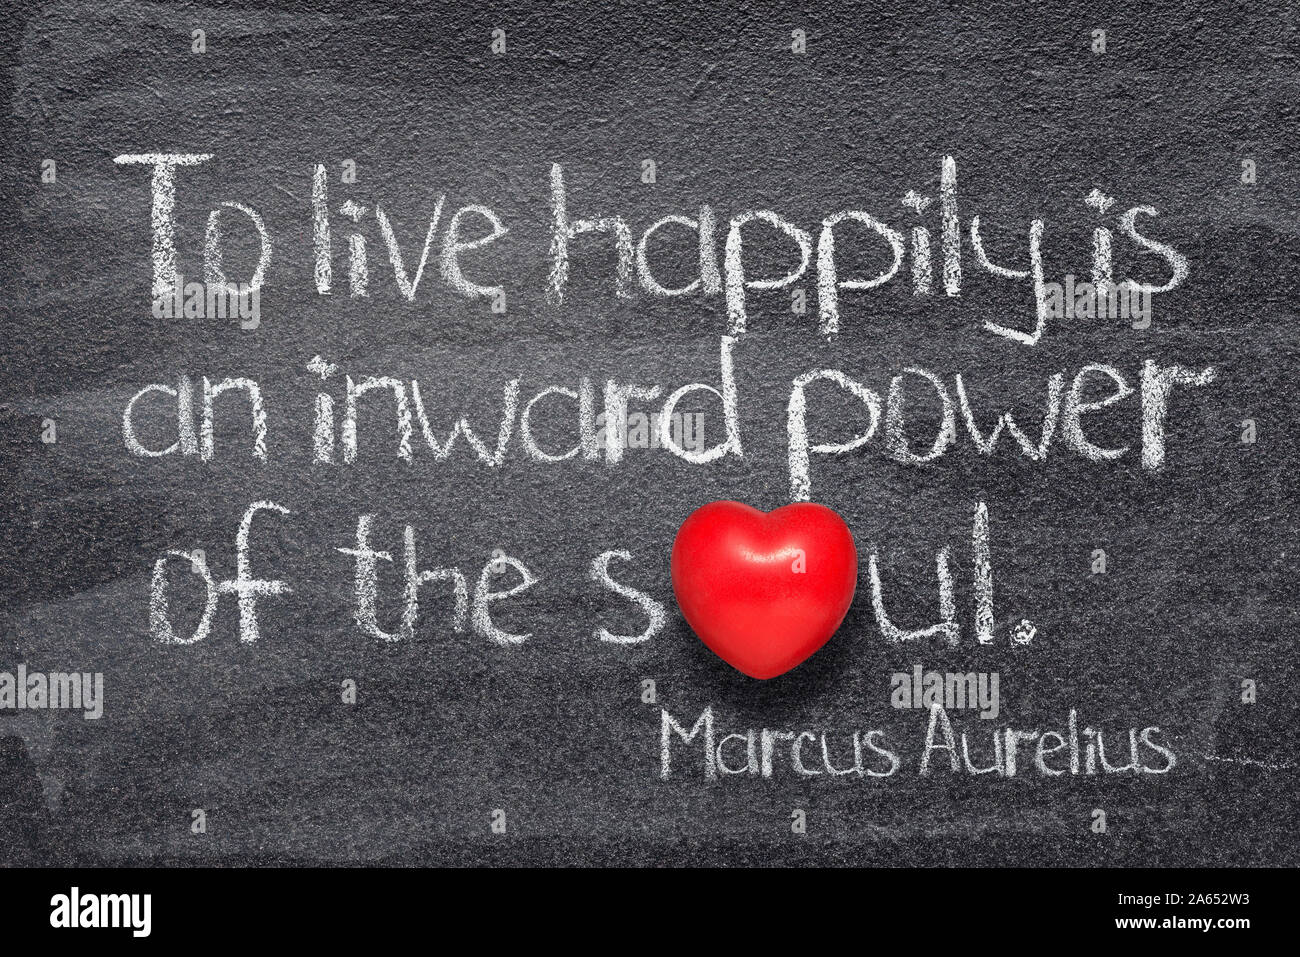 Per vivere felici è un potere verso l'interno dell'anima - antico filosofo romano Marco Aurelio concetto citazione scritta sulla lavagna Foto Stock